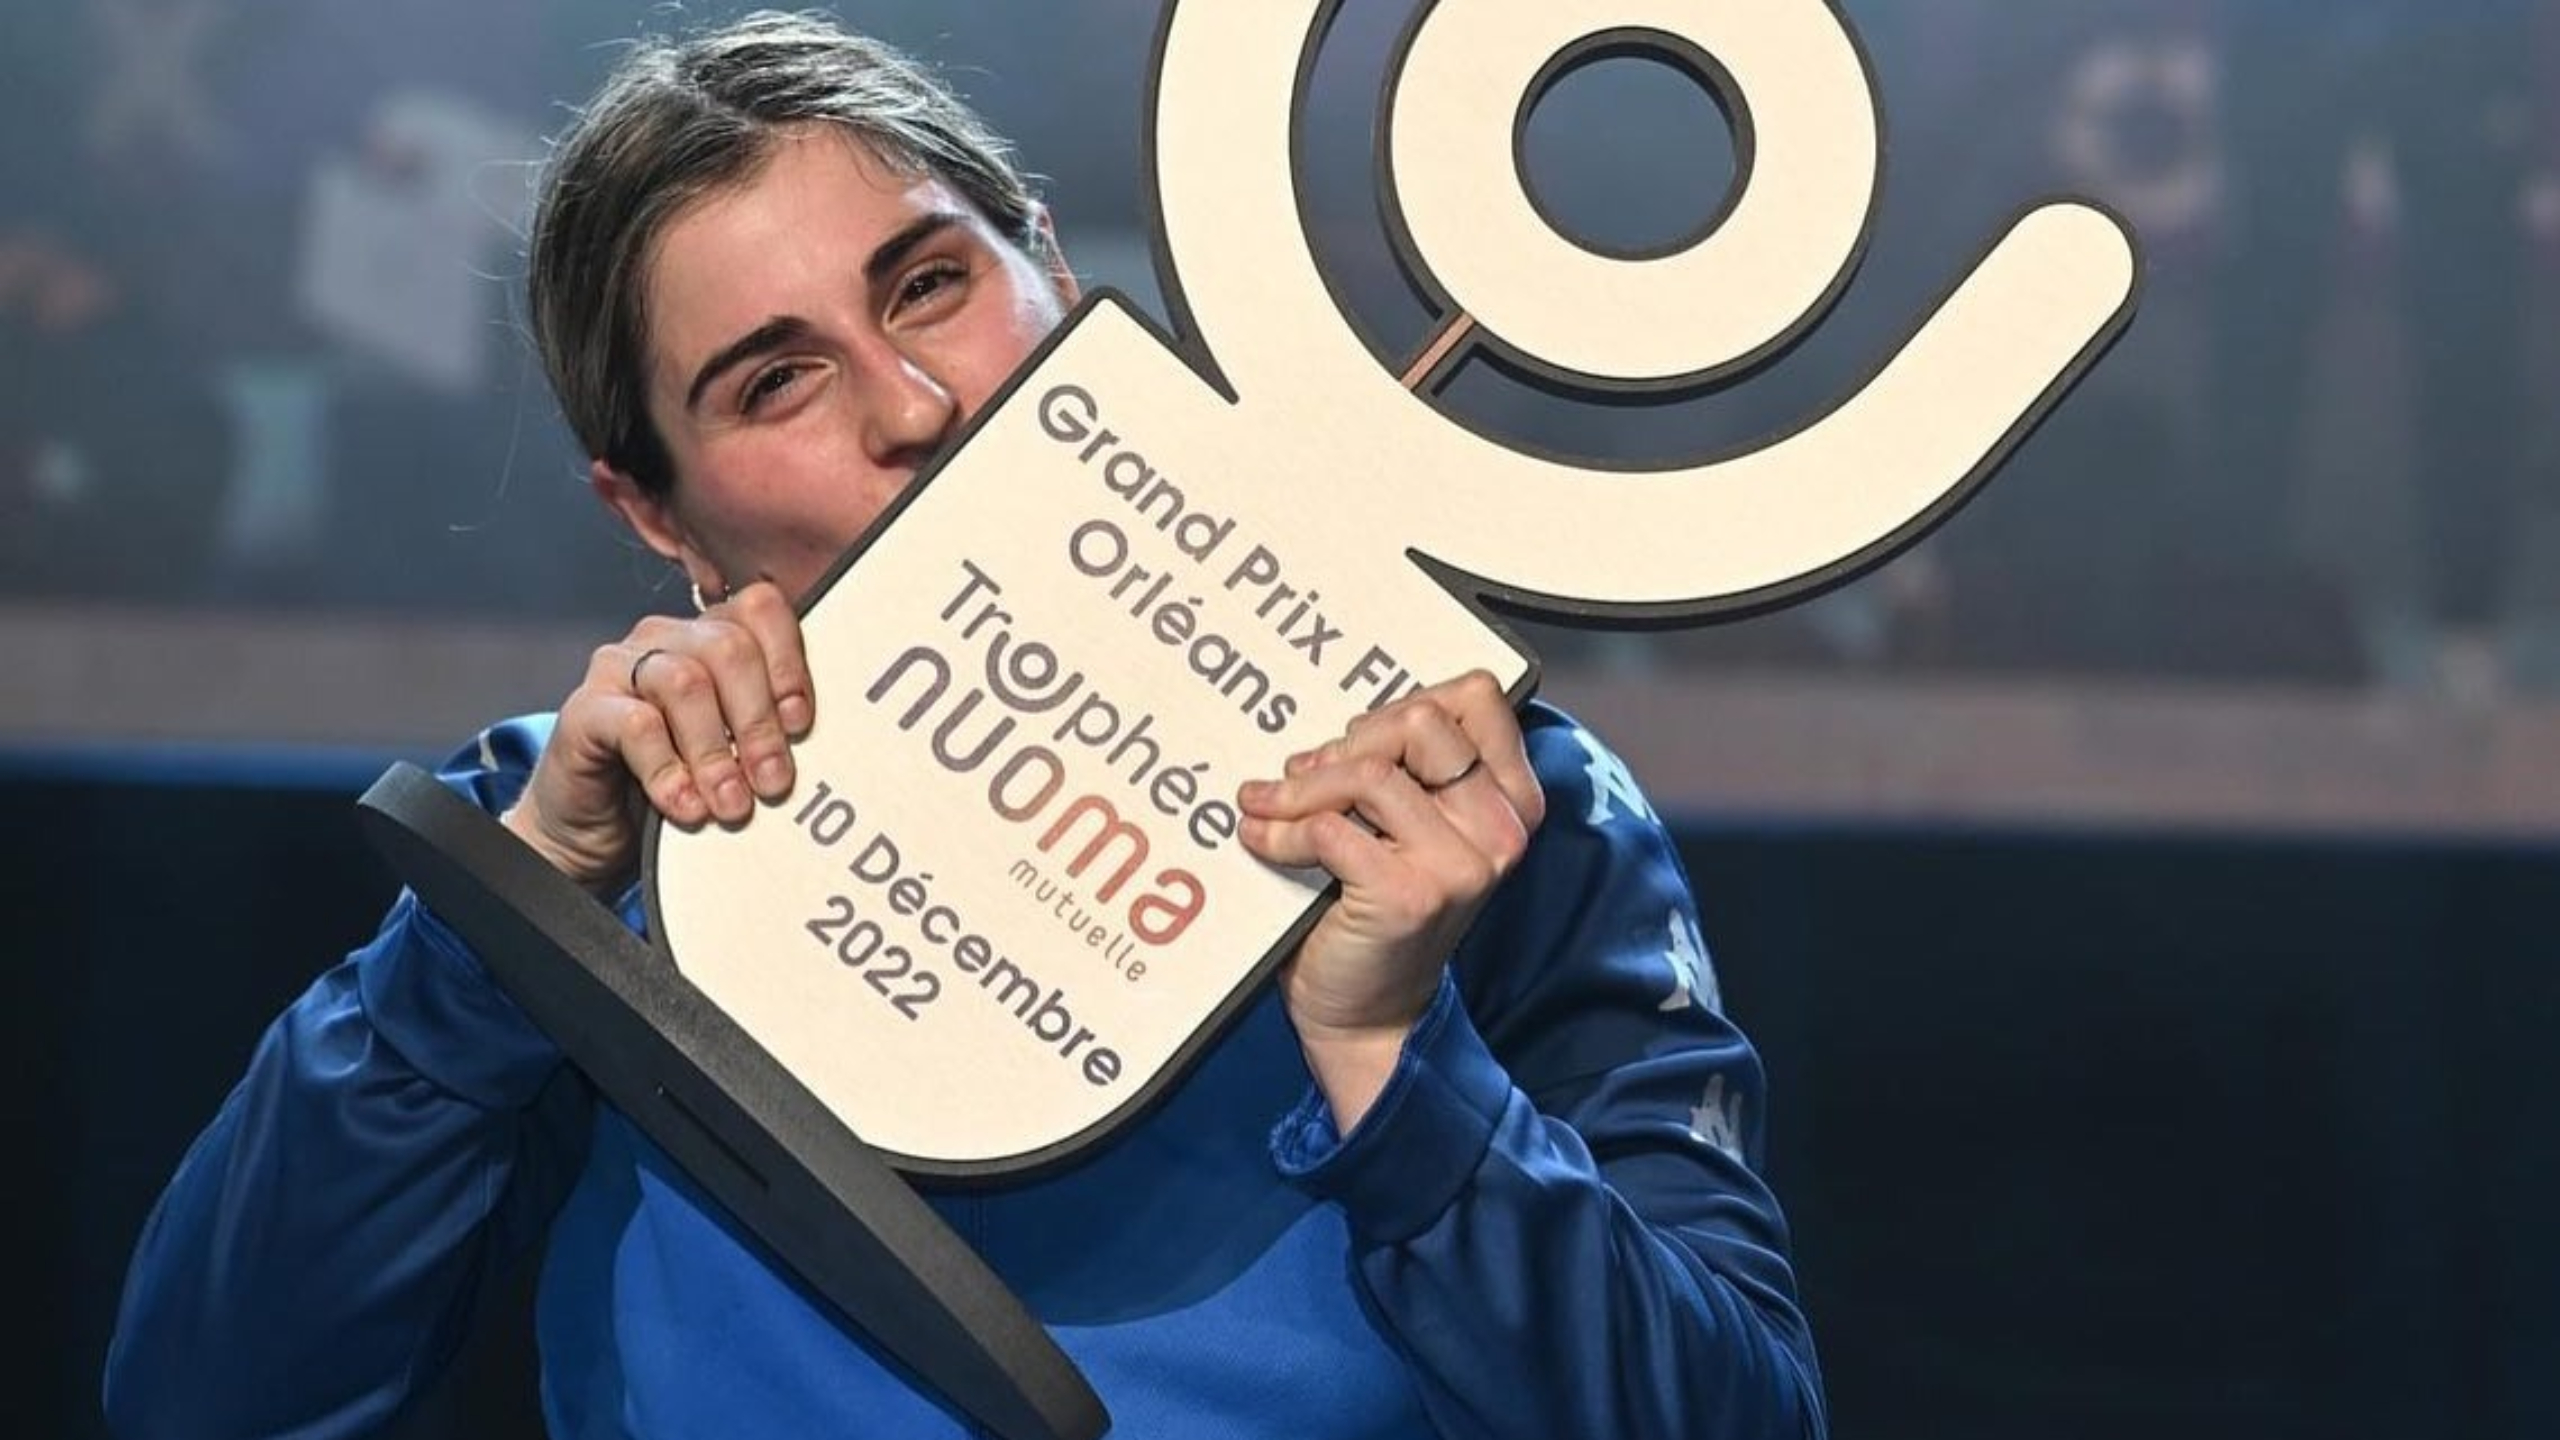 Scherma, Martina Criscio trionfa all’ultima stoccata in Coppa del Mondo a Orleans